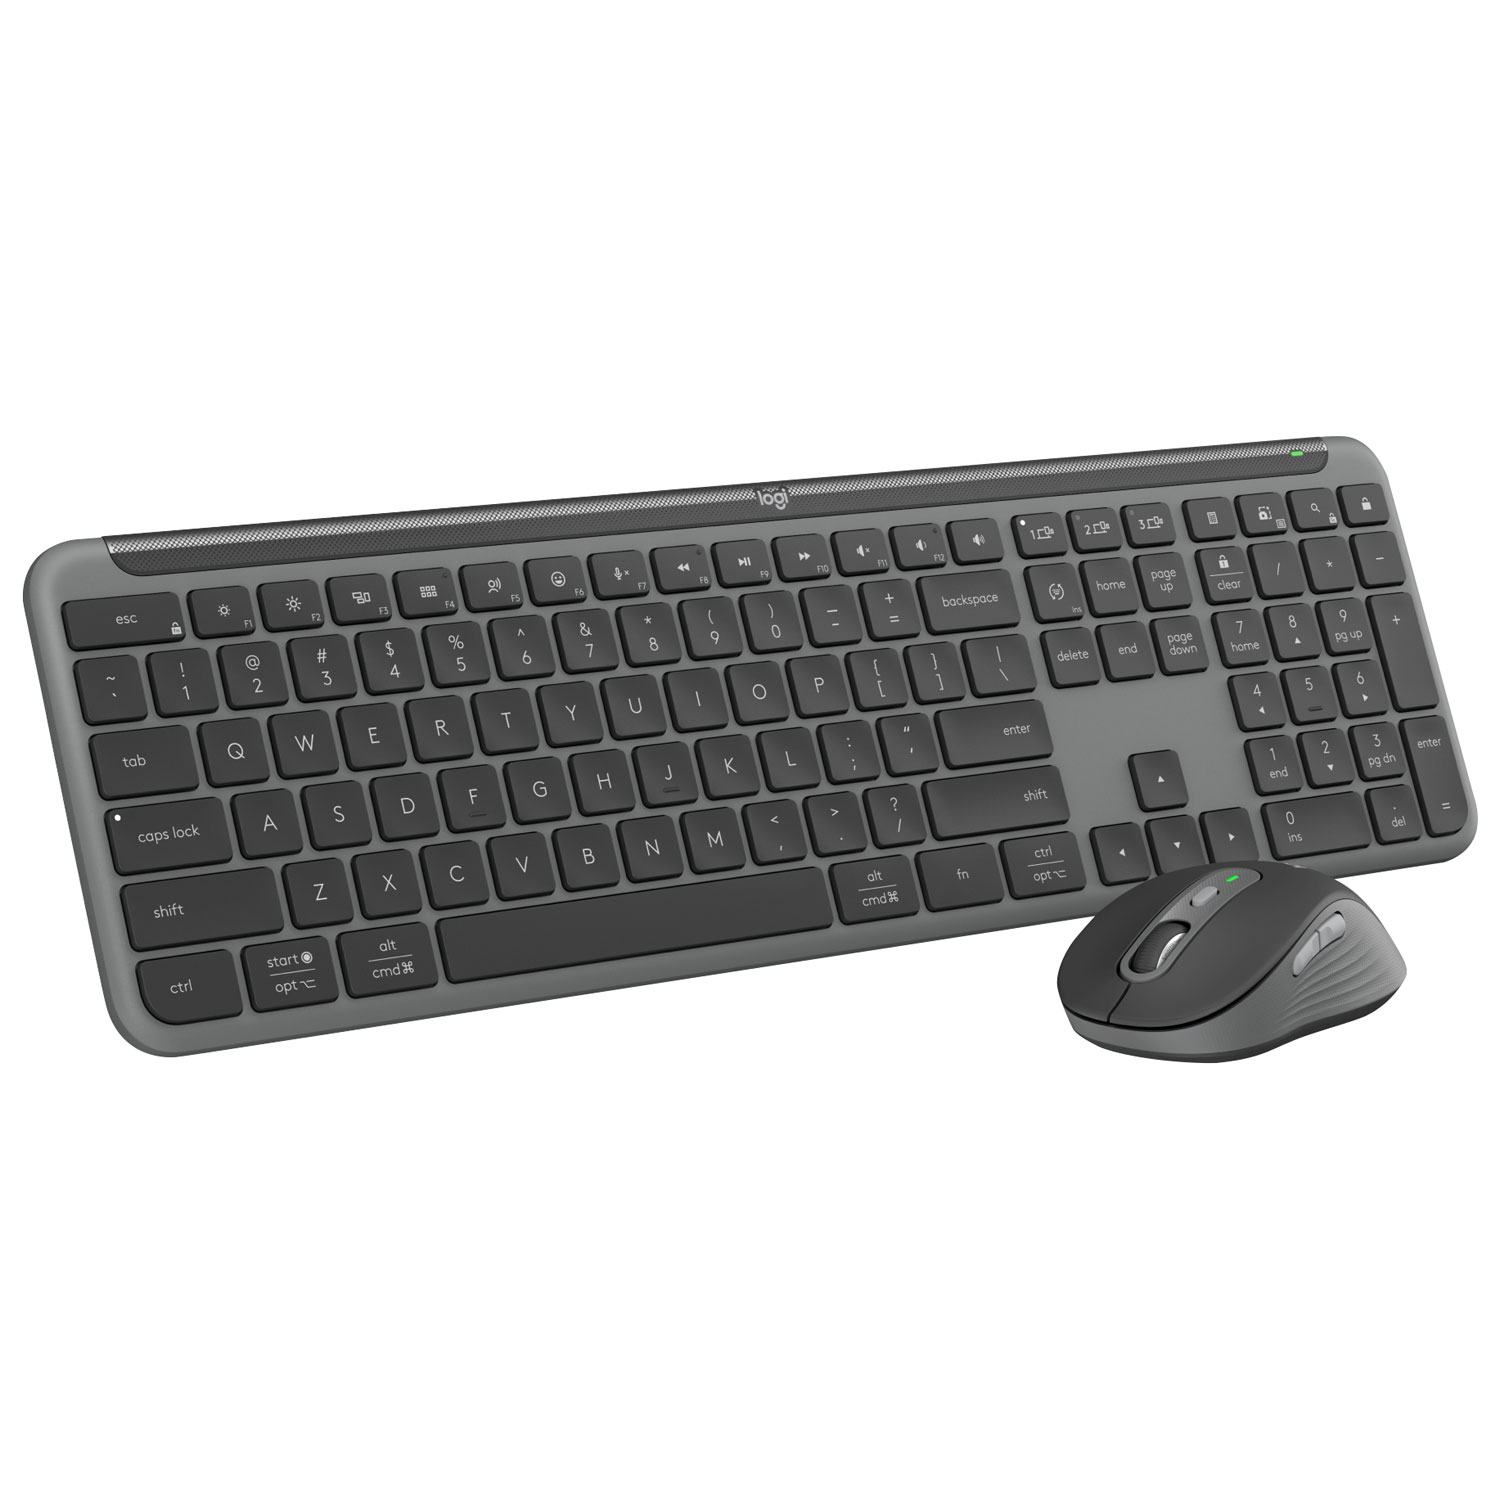 Logitech MK955 Signature Slim Wireless Optical Full-Size Keyboard & Mouse Combo - English